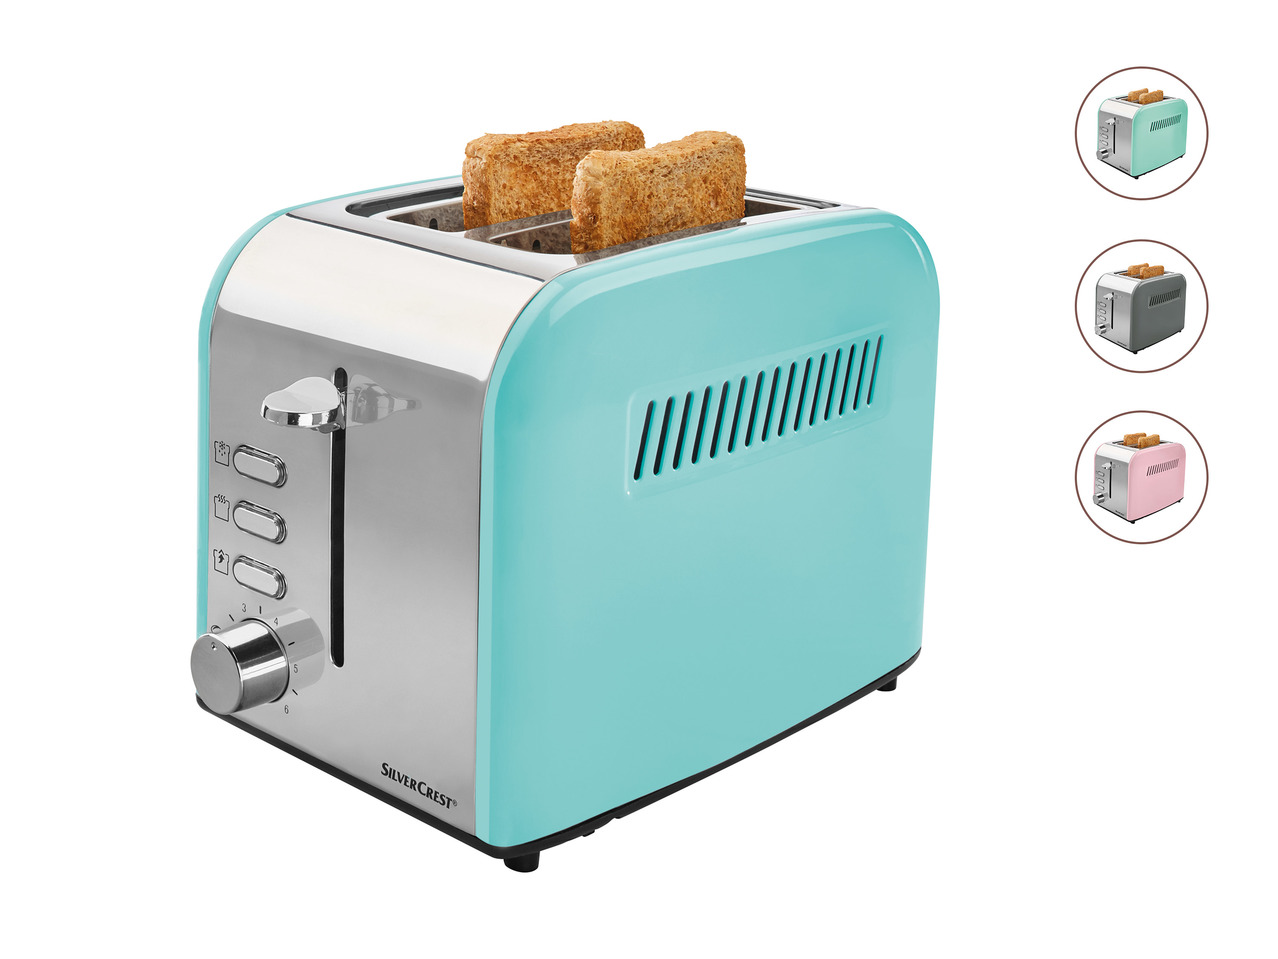 Silvercrest Kitchen Tools Toaster1